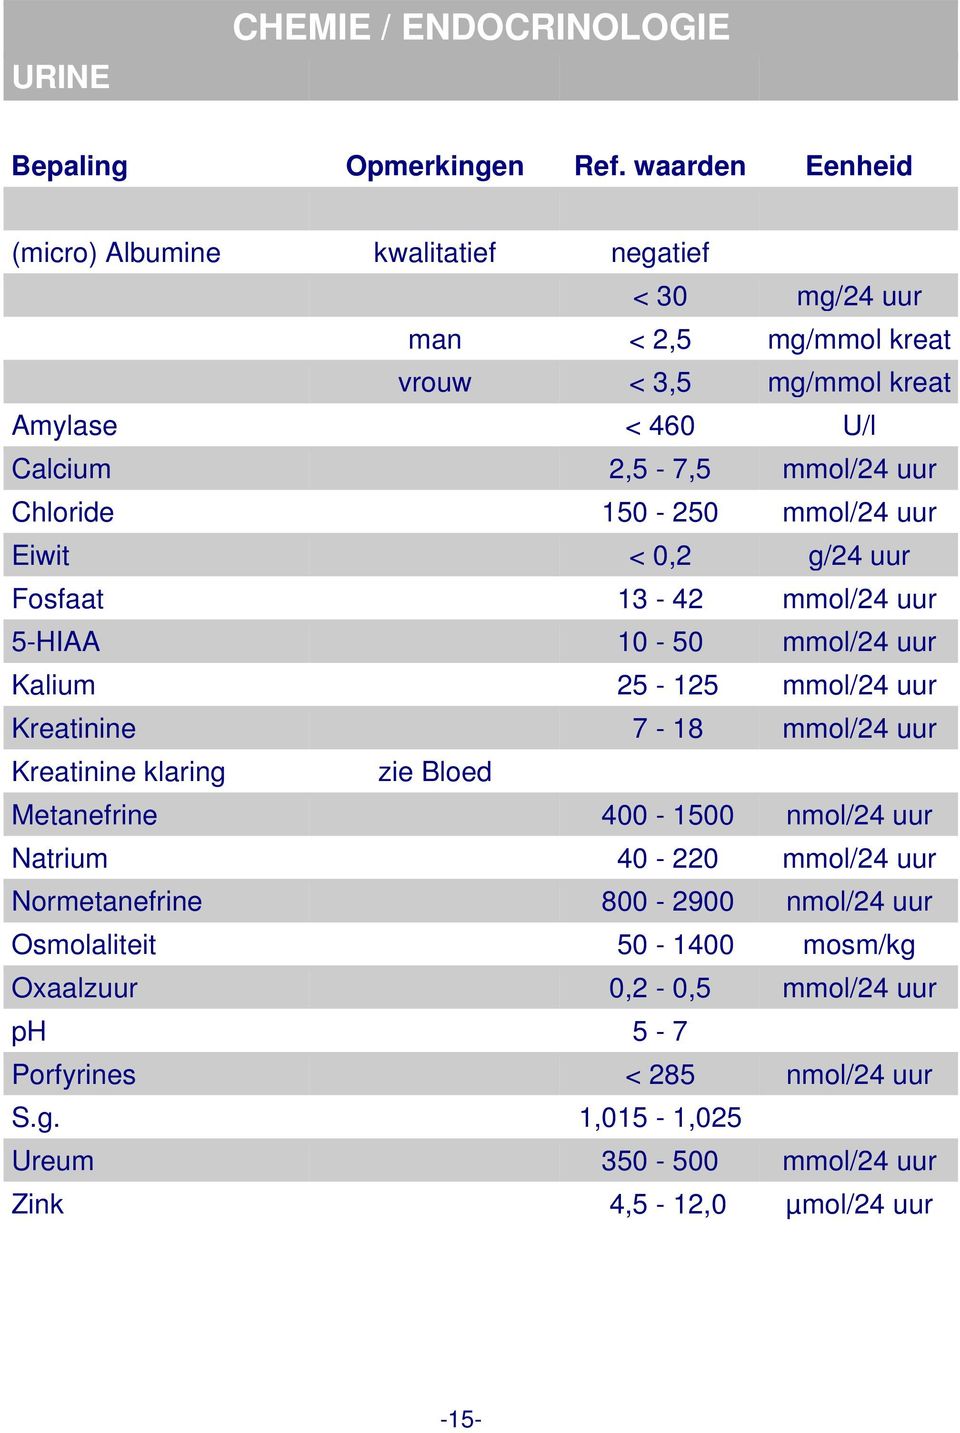 Kreatinine 7-18 mmol/24 uur Kreatinine klaring zie Bloed Metanefrine 400-1500 nmol/24 uur Natrium 40-220 mmol/24 uur Normetanefrine 800-2900 nmol/24 uur